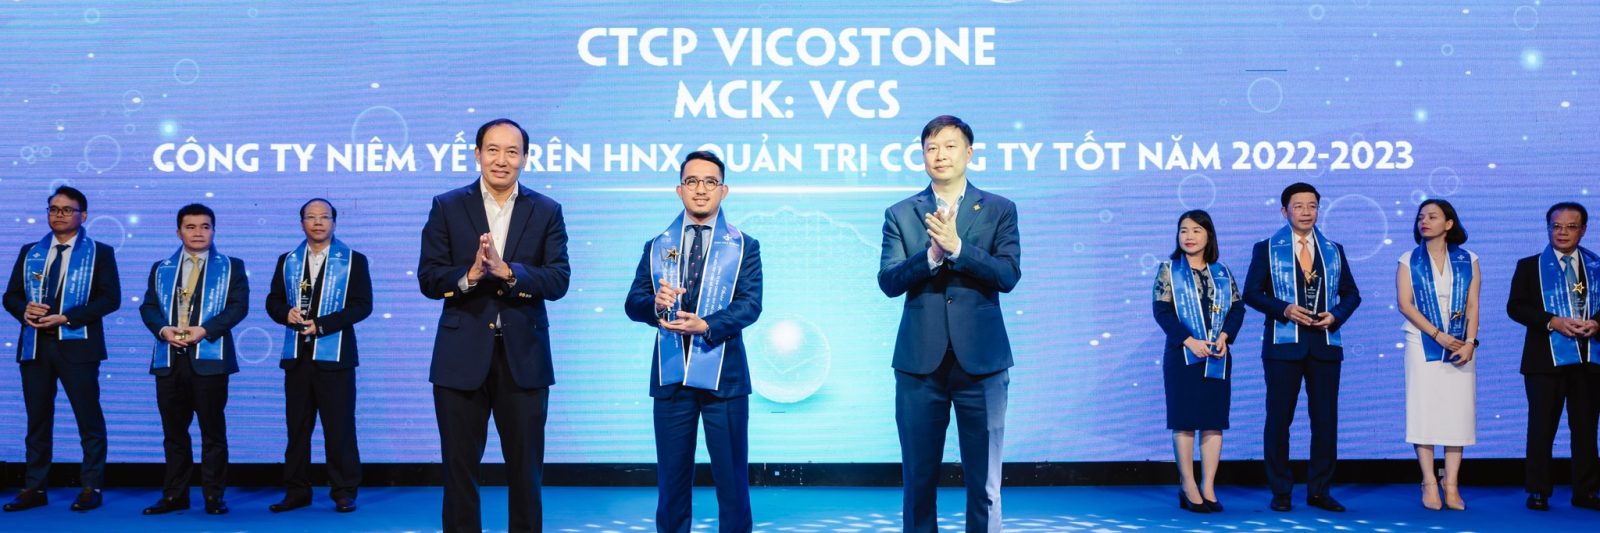 Vicostone vinh dự đạt Top 10 doanh nghiệp quản trị công ty năm 2022 - 2023 của HNX